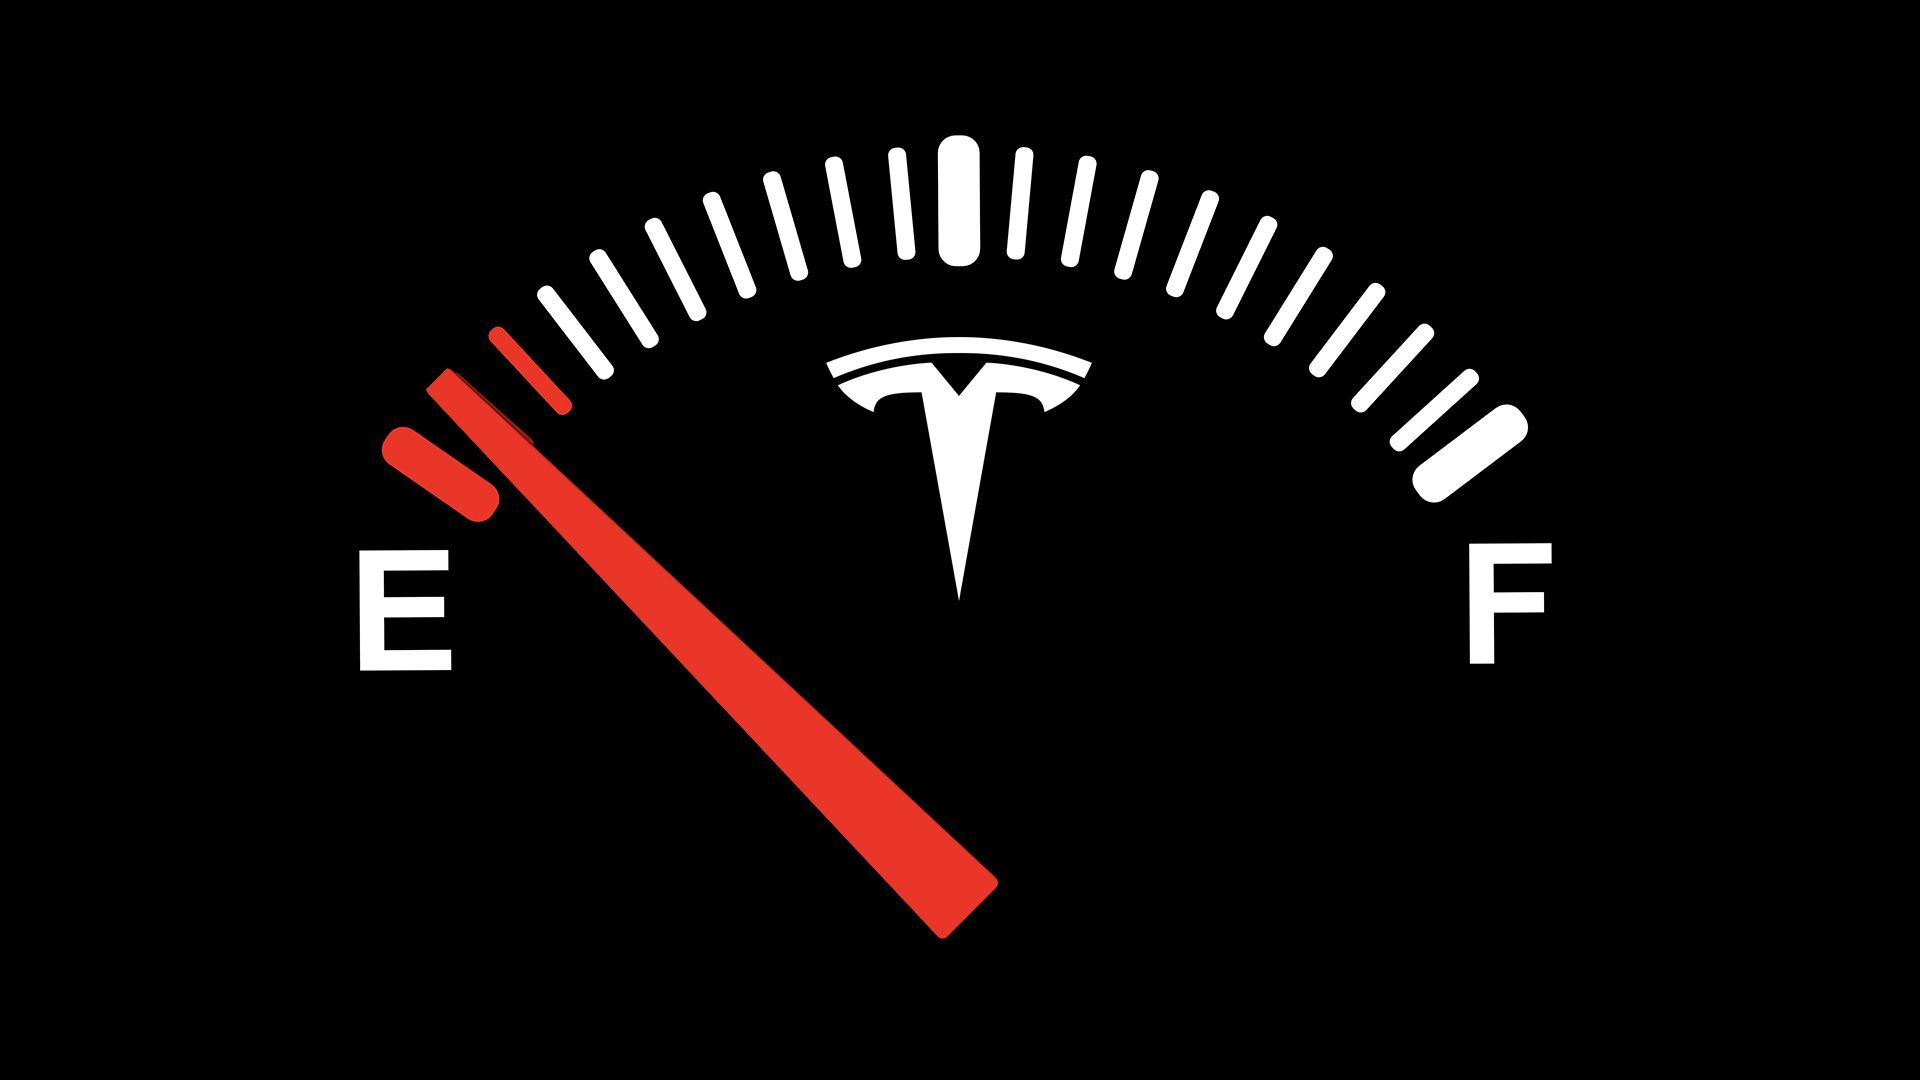 Illustration of Tesla gas tank on empty